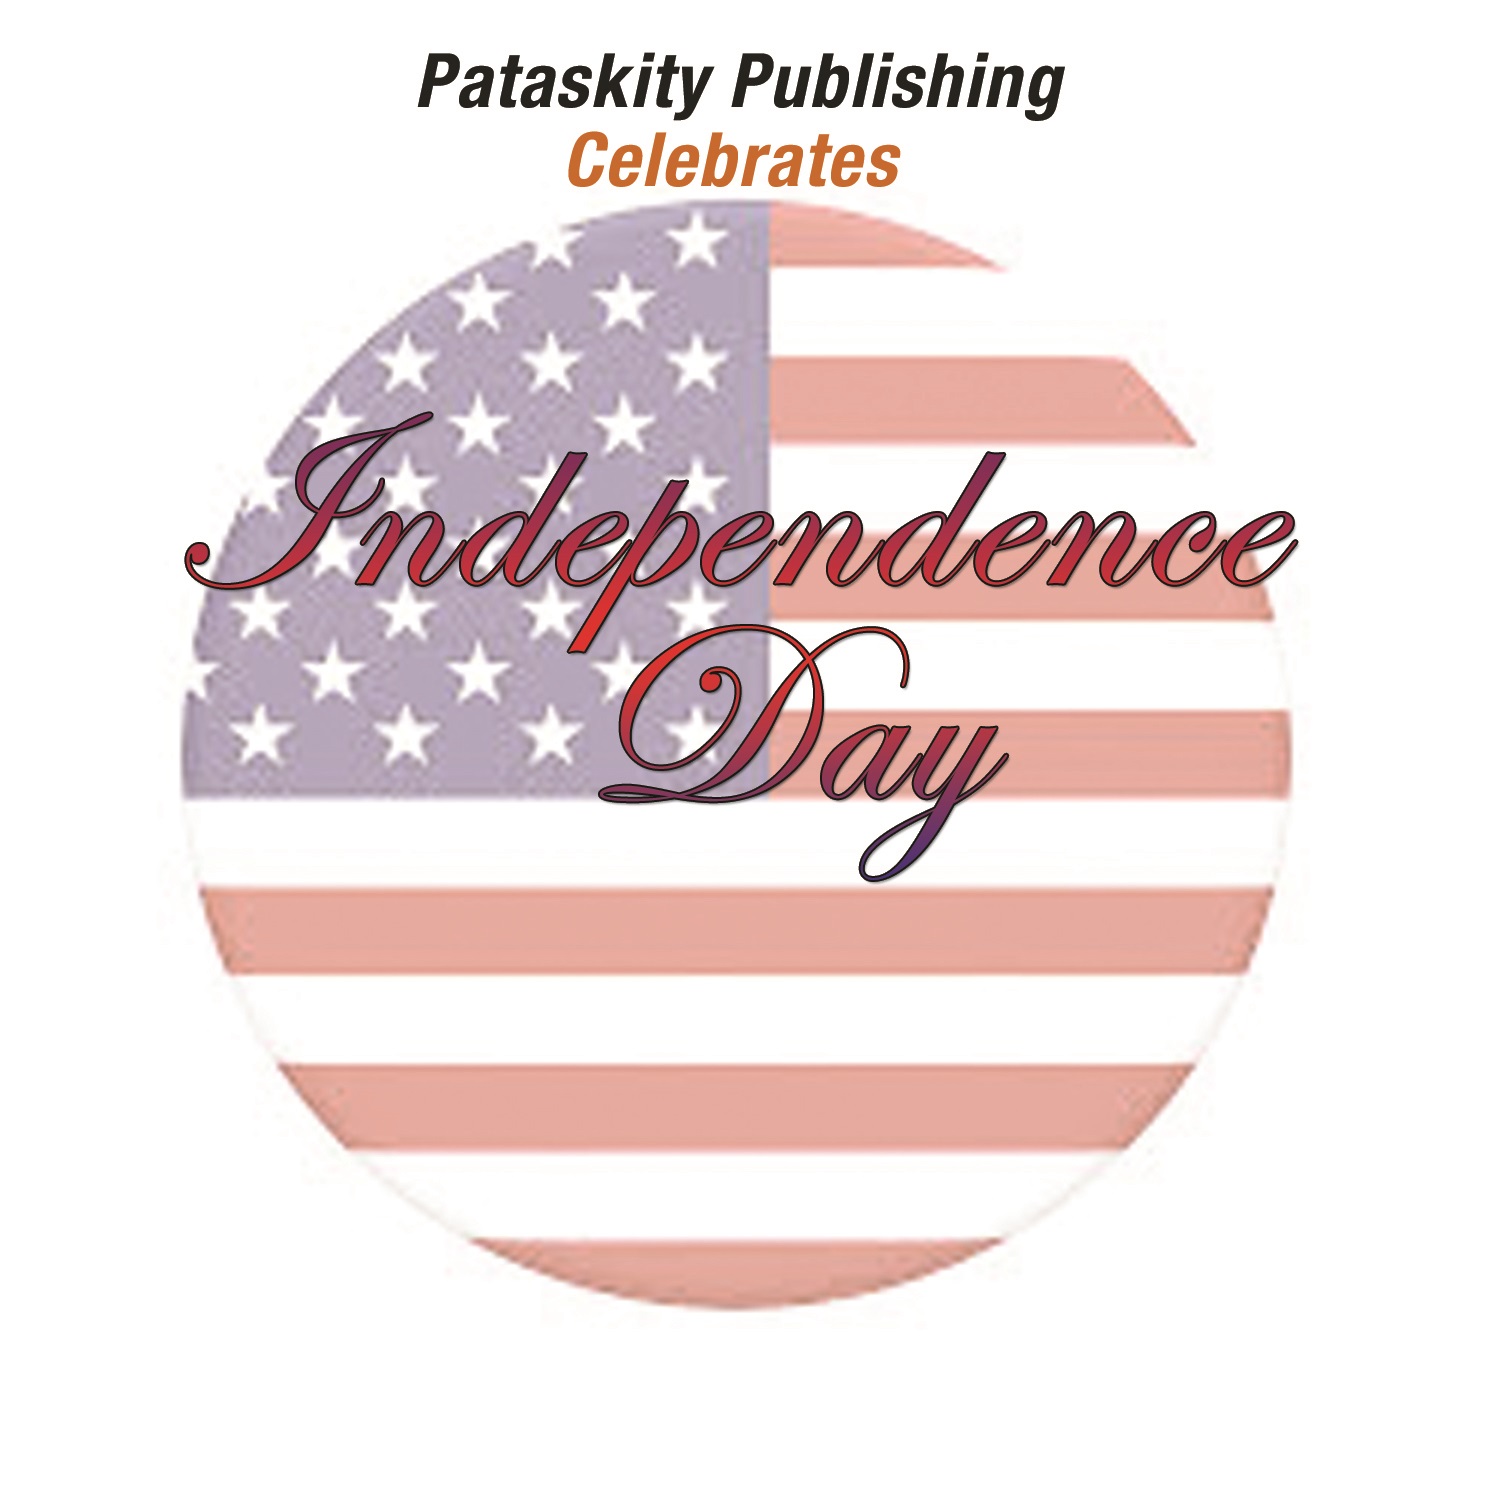 Pataskity Publishing Celebrates Independence Day!